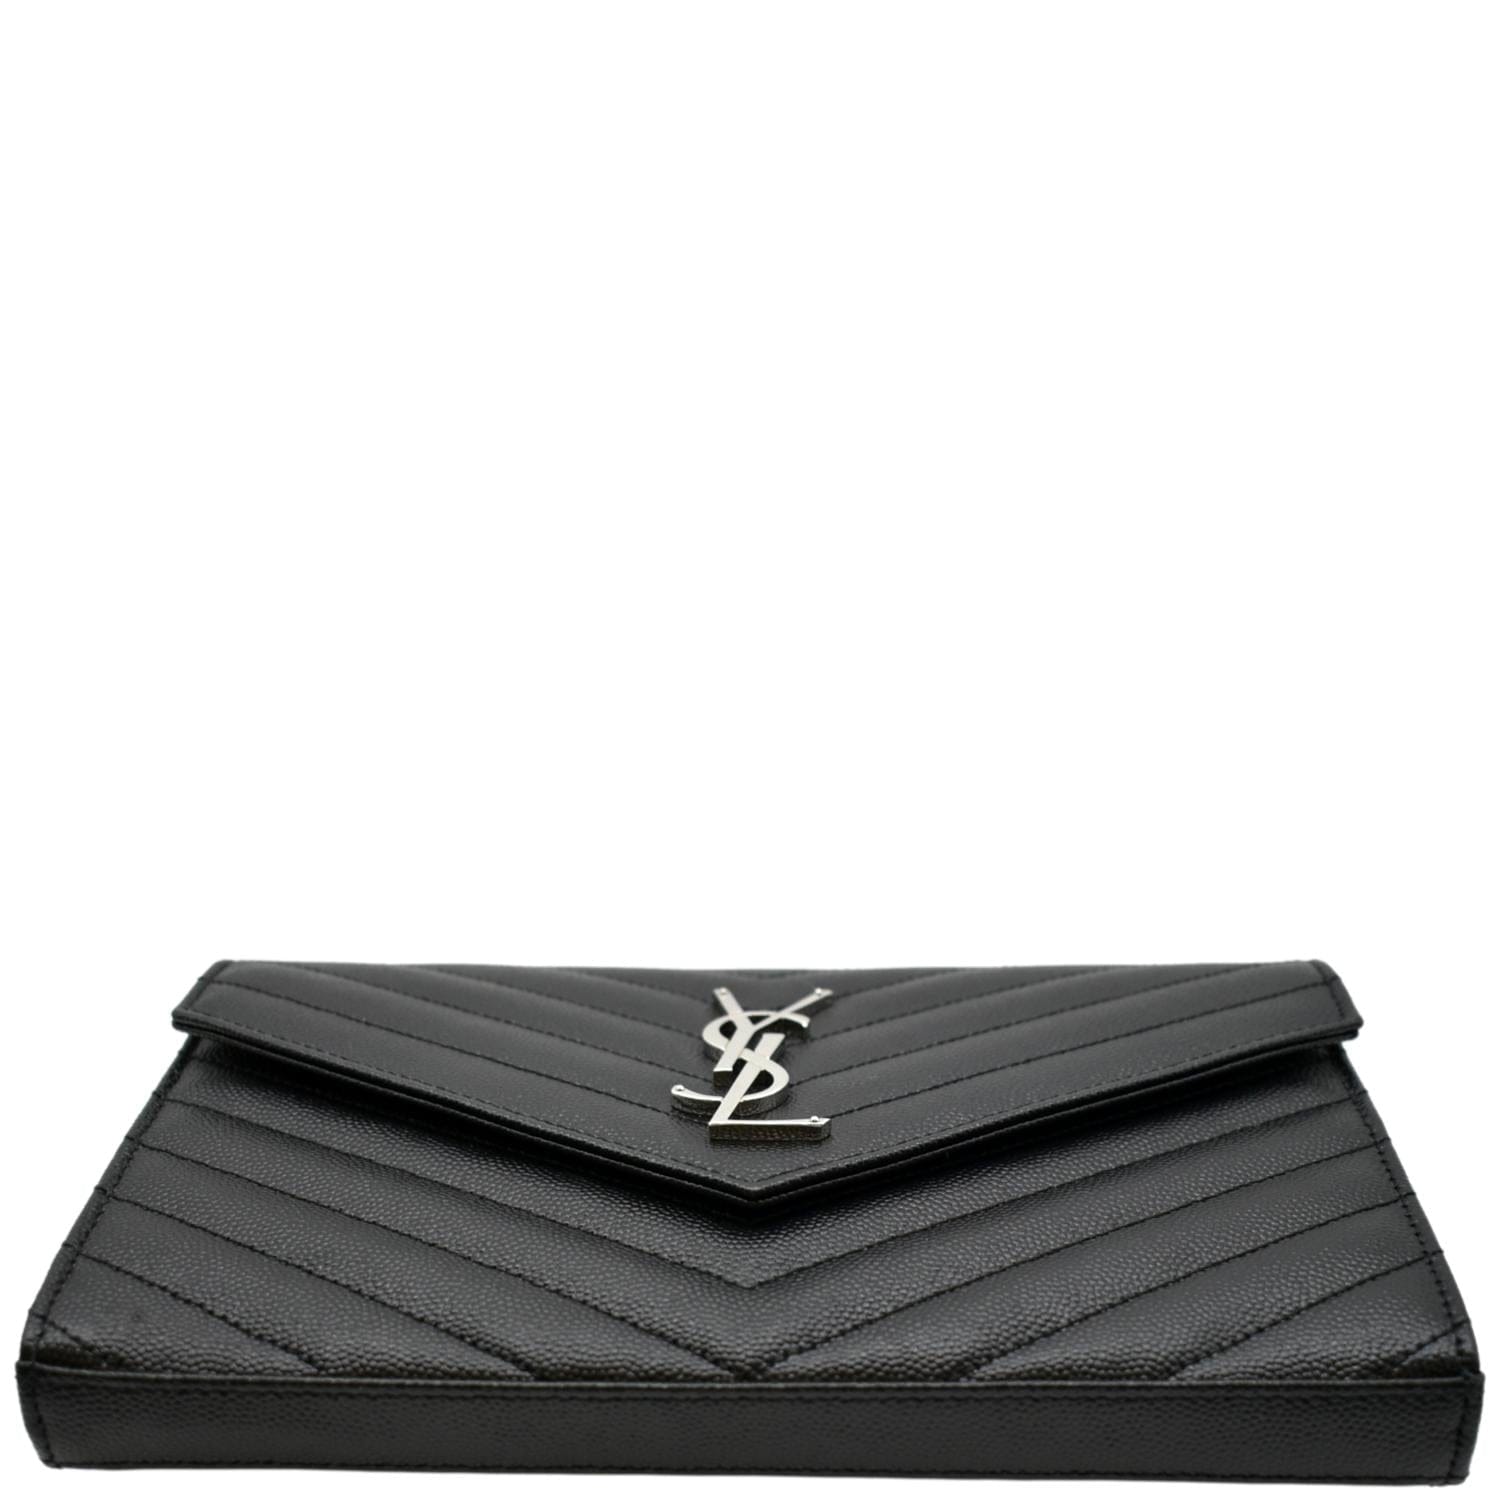 Saint Laurent Chevron Leather Monogram Wallet Chain Bag Black